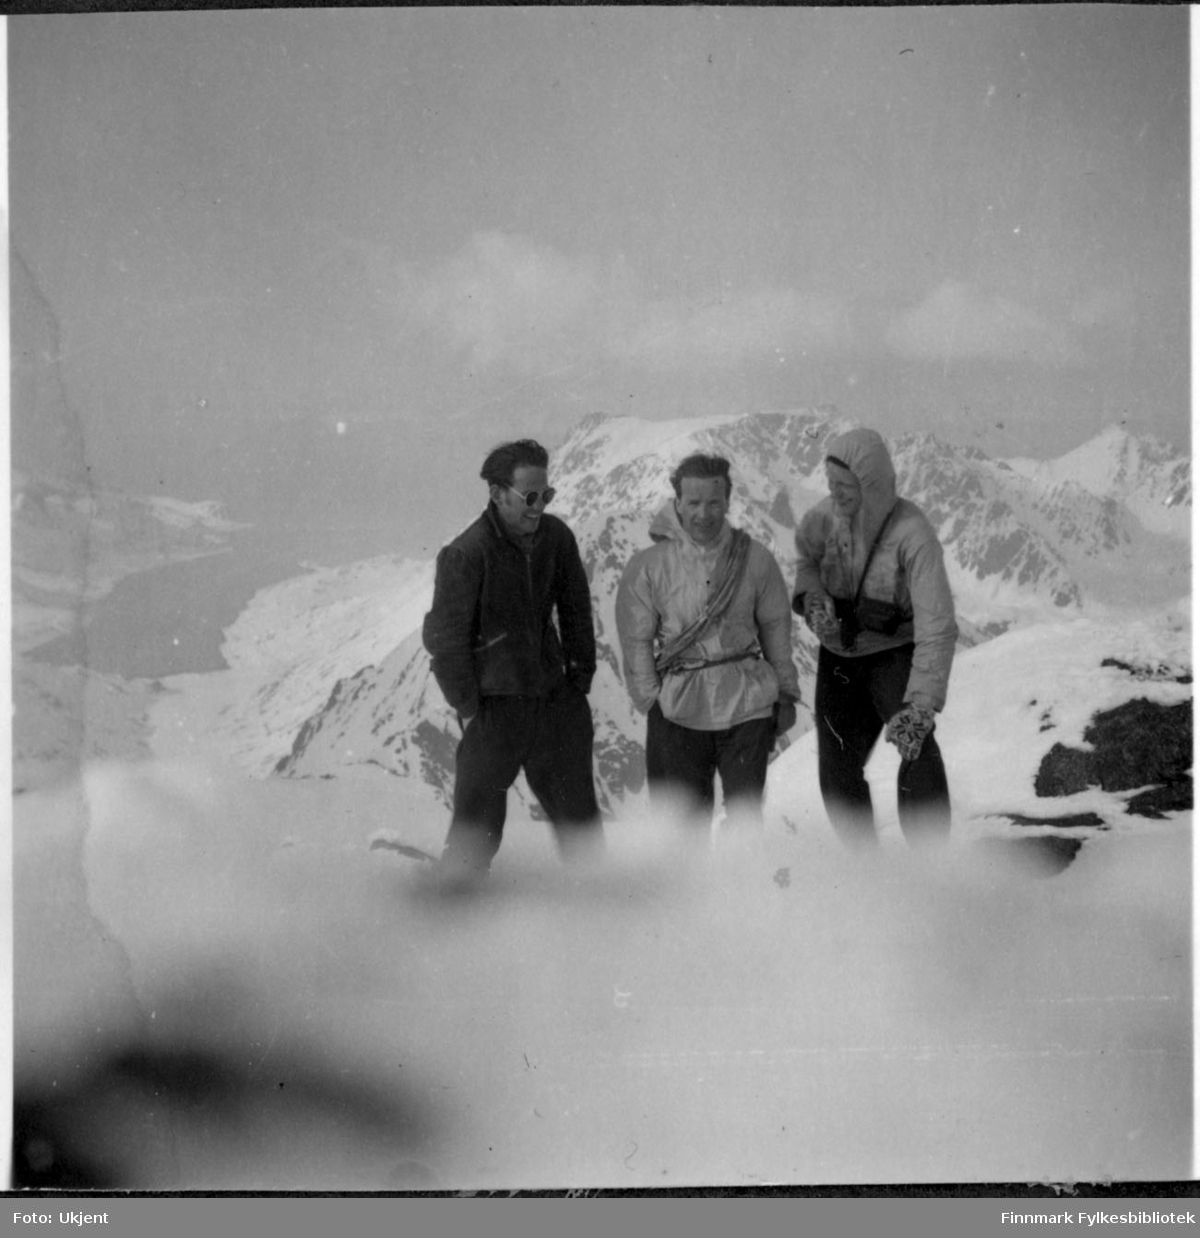 På tur til Øksfjordjøkelen i Nuvsvåg. Fra venstre Gunnar Ørstadvik, Adolf Blone og Reidar Martinsen. De tre mennene har på seg vinterklær, jakker og bukser. Gunnar helt til venstre har på seg solbriller og man kan se at Reidar helt til høyre har på seg votter. Bak mennene kan man se fjell og vann. Det er mye sne på bakken.